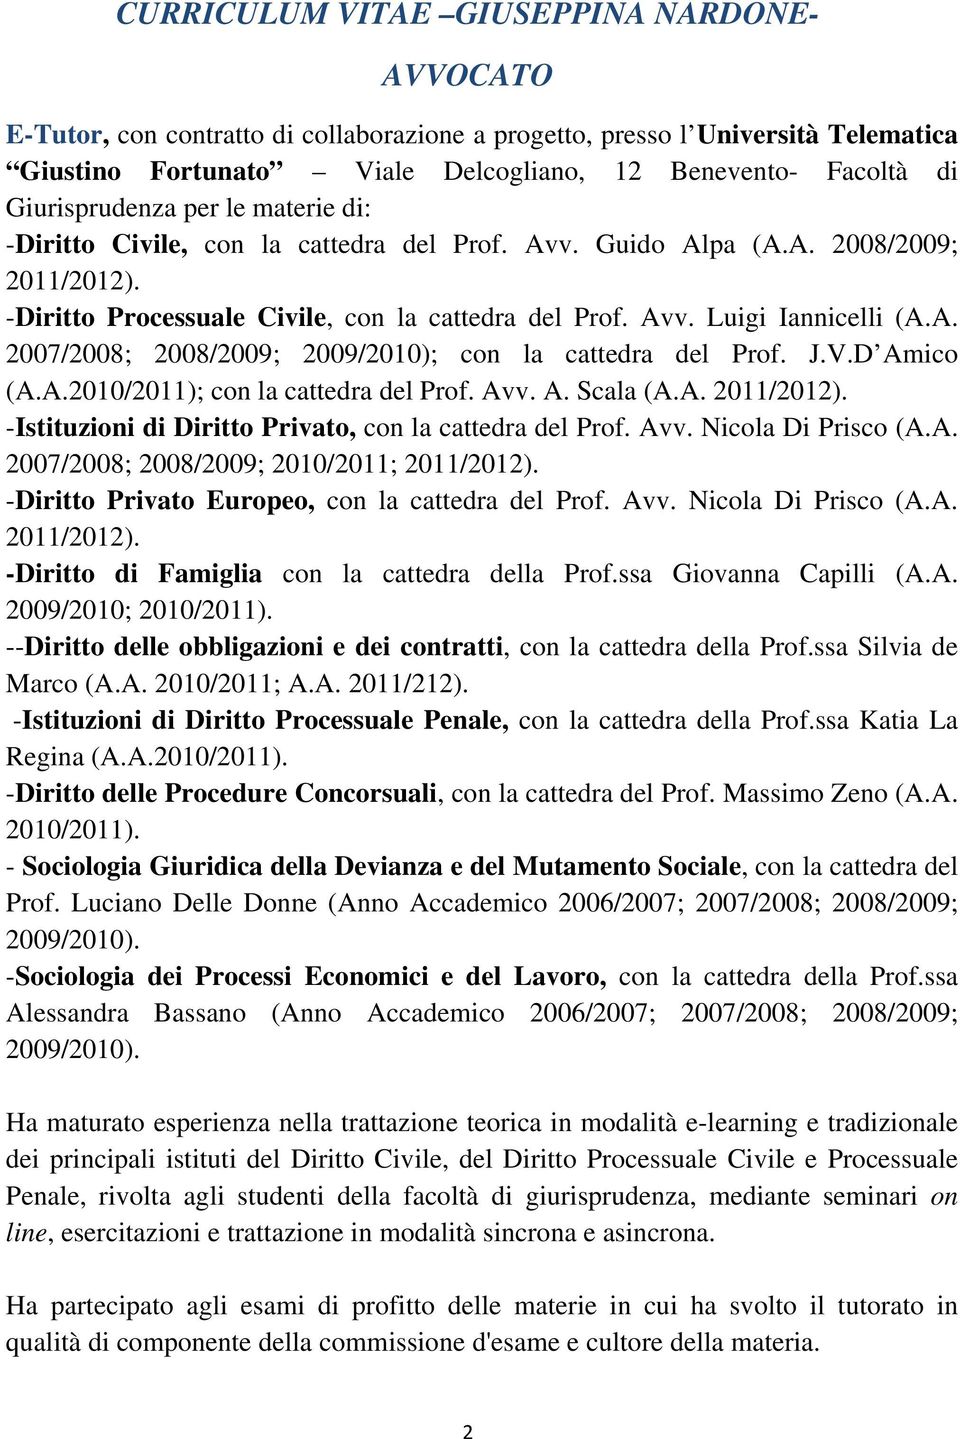 J.V.D Amico (A.A.2010/2011); con la cattedra del Prof. Avv. A. Scala (A.A. 2011/2012). -Istituzioni di Diritto Privato, con la cattedra del Prof. Avv. Nicola Di Prisco (A.A. 2007/2008; 2008/2009; 2010/2011; 2011/2012).